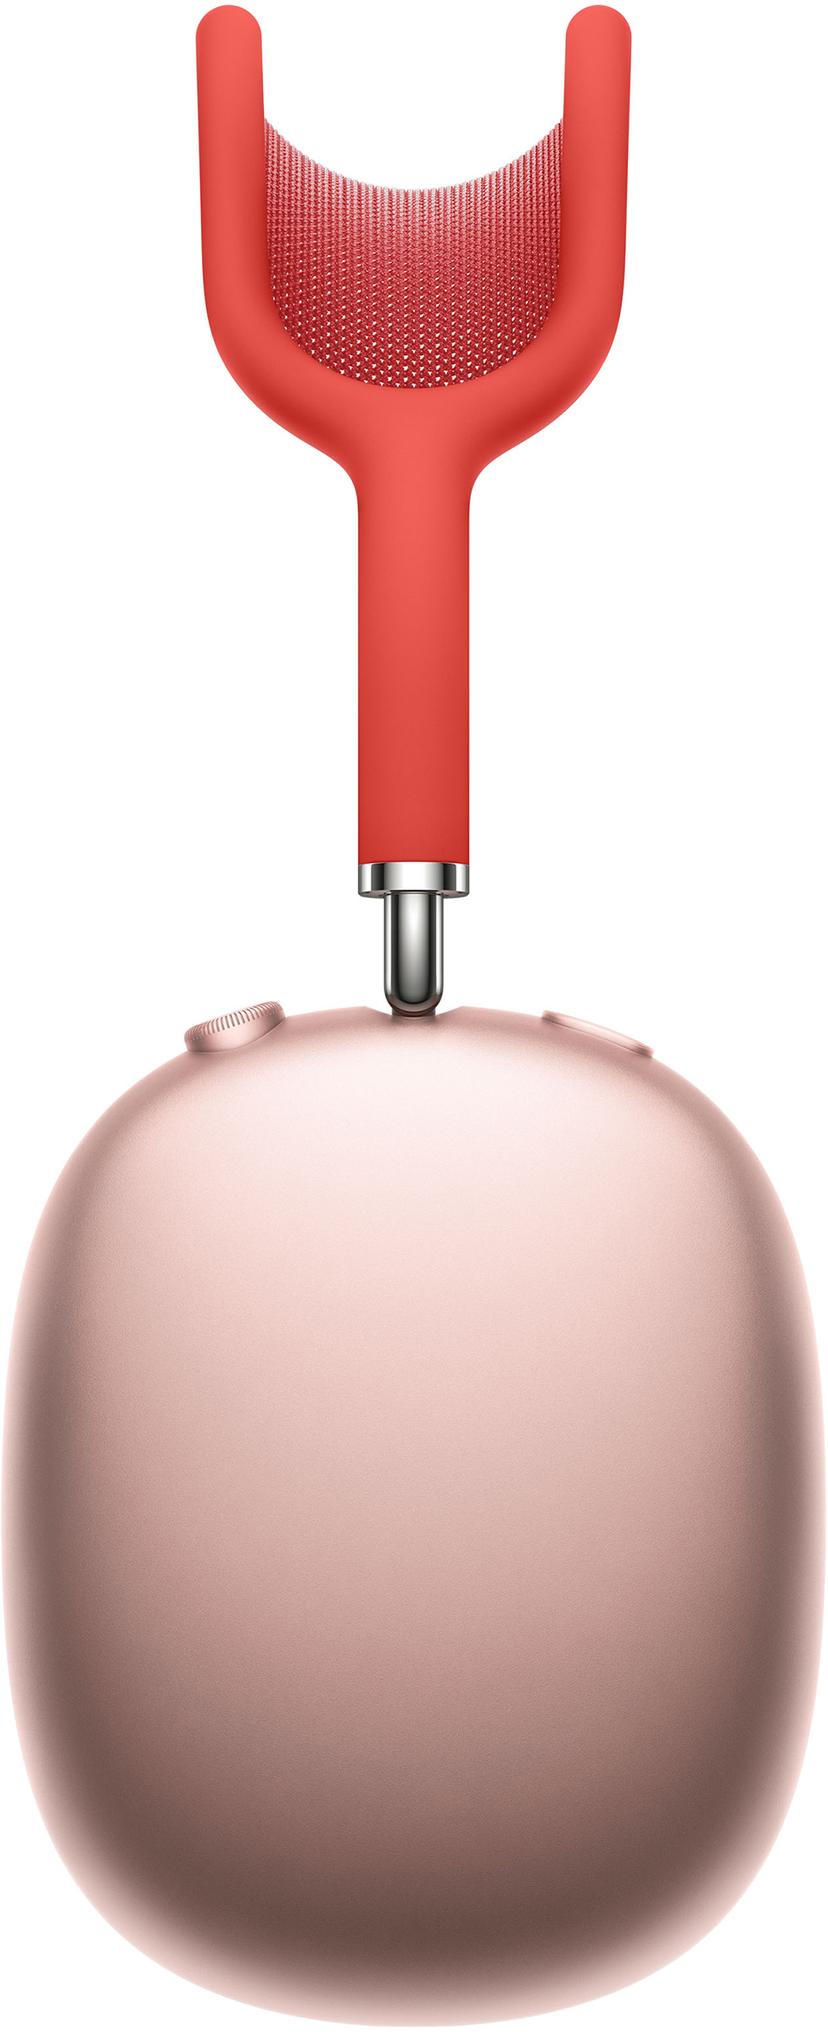 Apple AirPods Max Kuulokkeet Stereo Pinkki